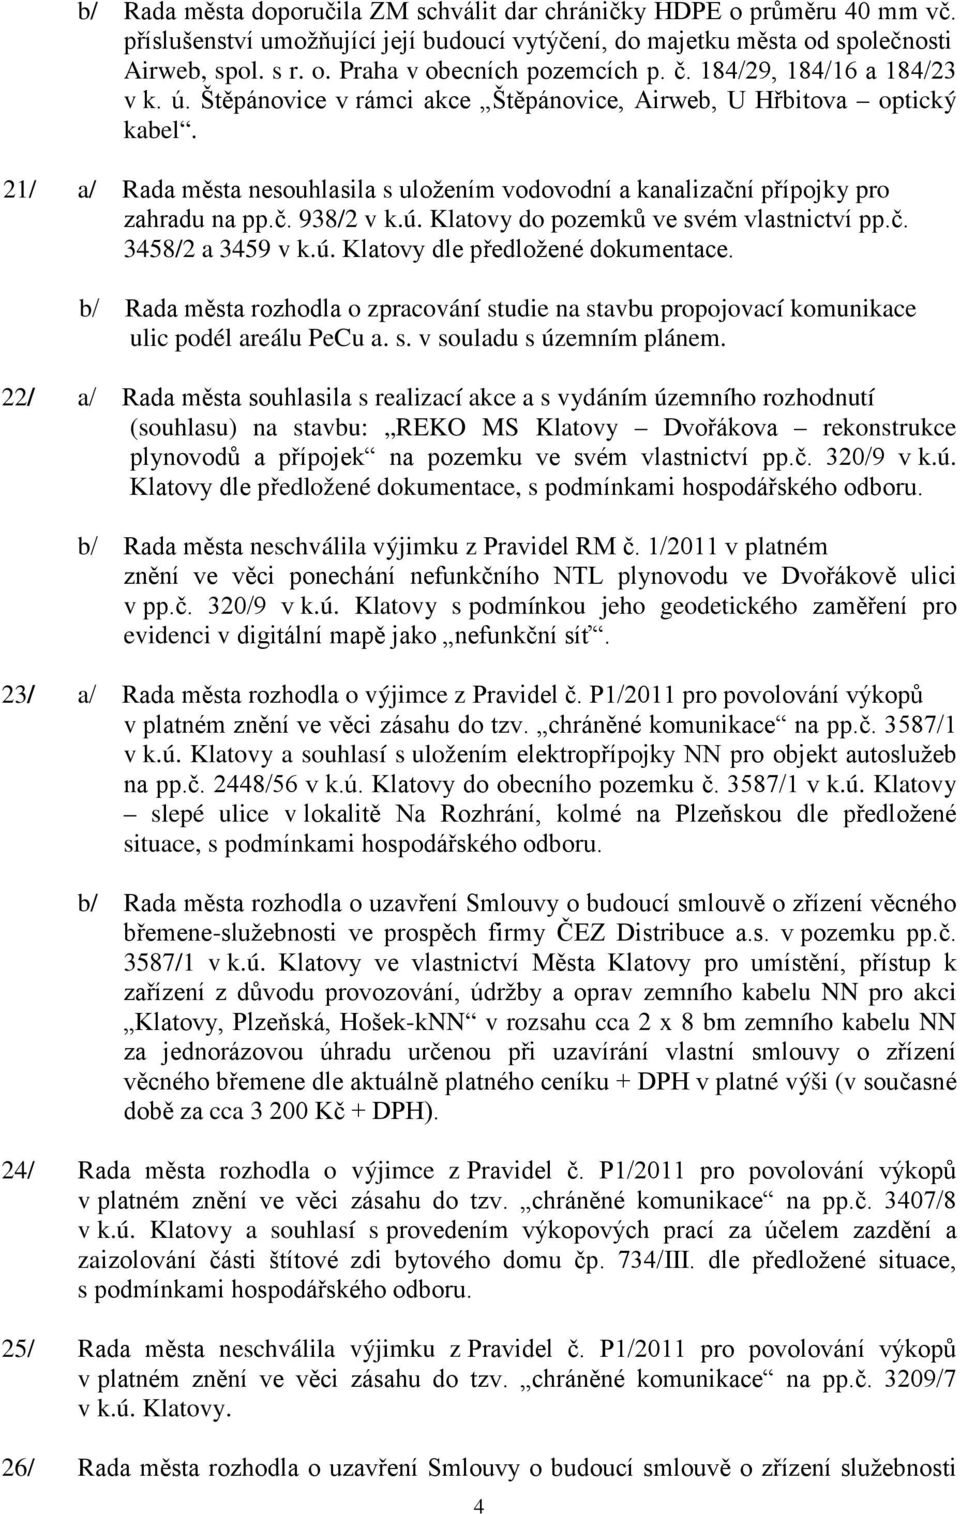 č. 938/2 v k.ú. Klatovy do pozemků ve svém vlastnictví pp.č. 3458/2 a 3459 v k.ú. Klatovy dle předložené dokumentace.